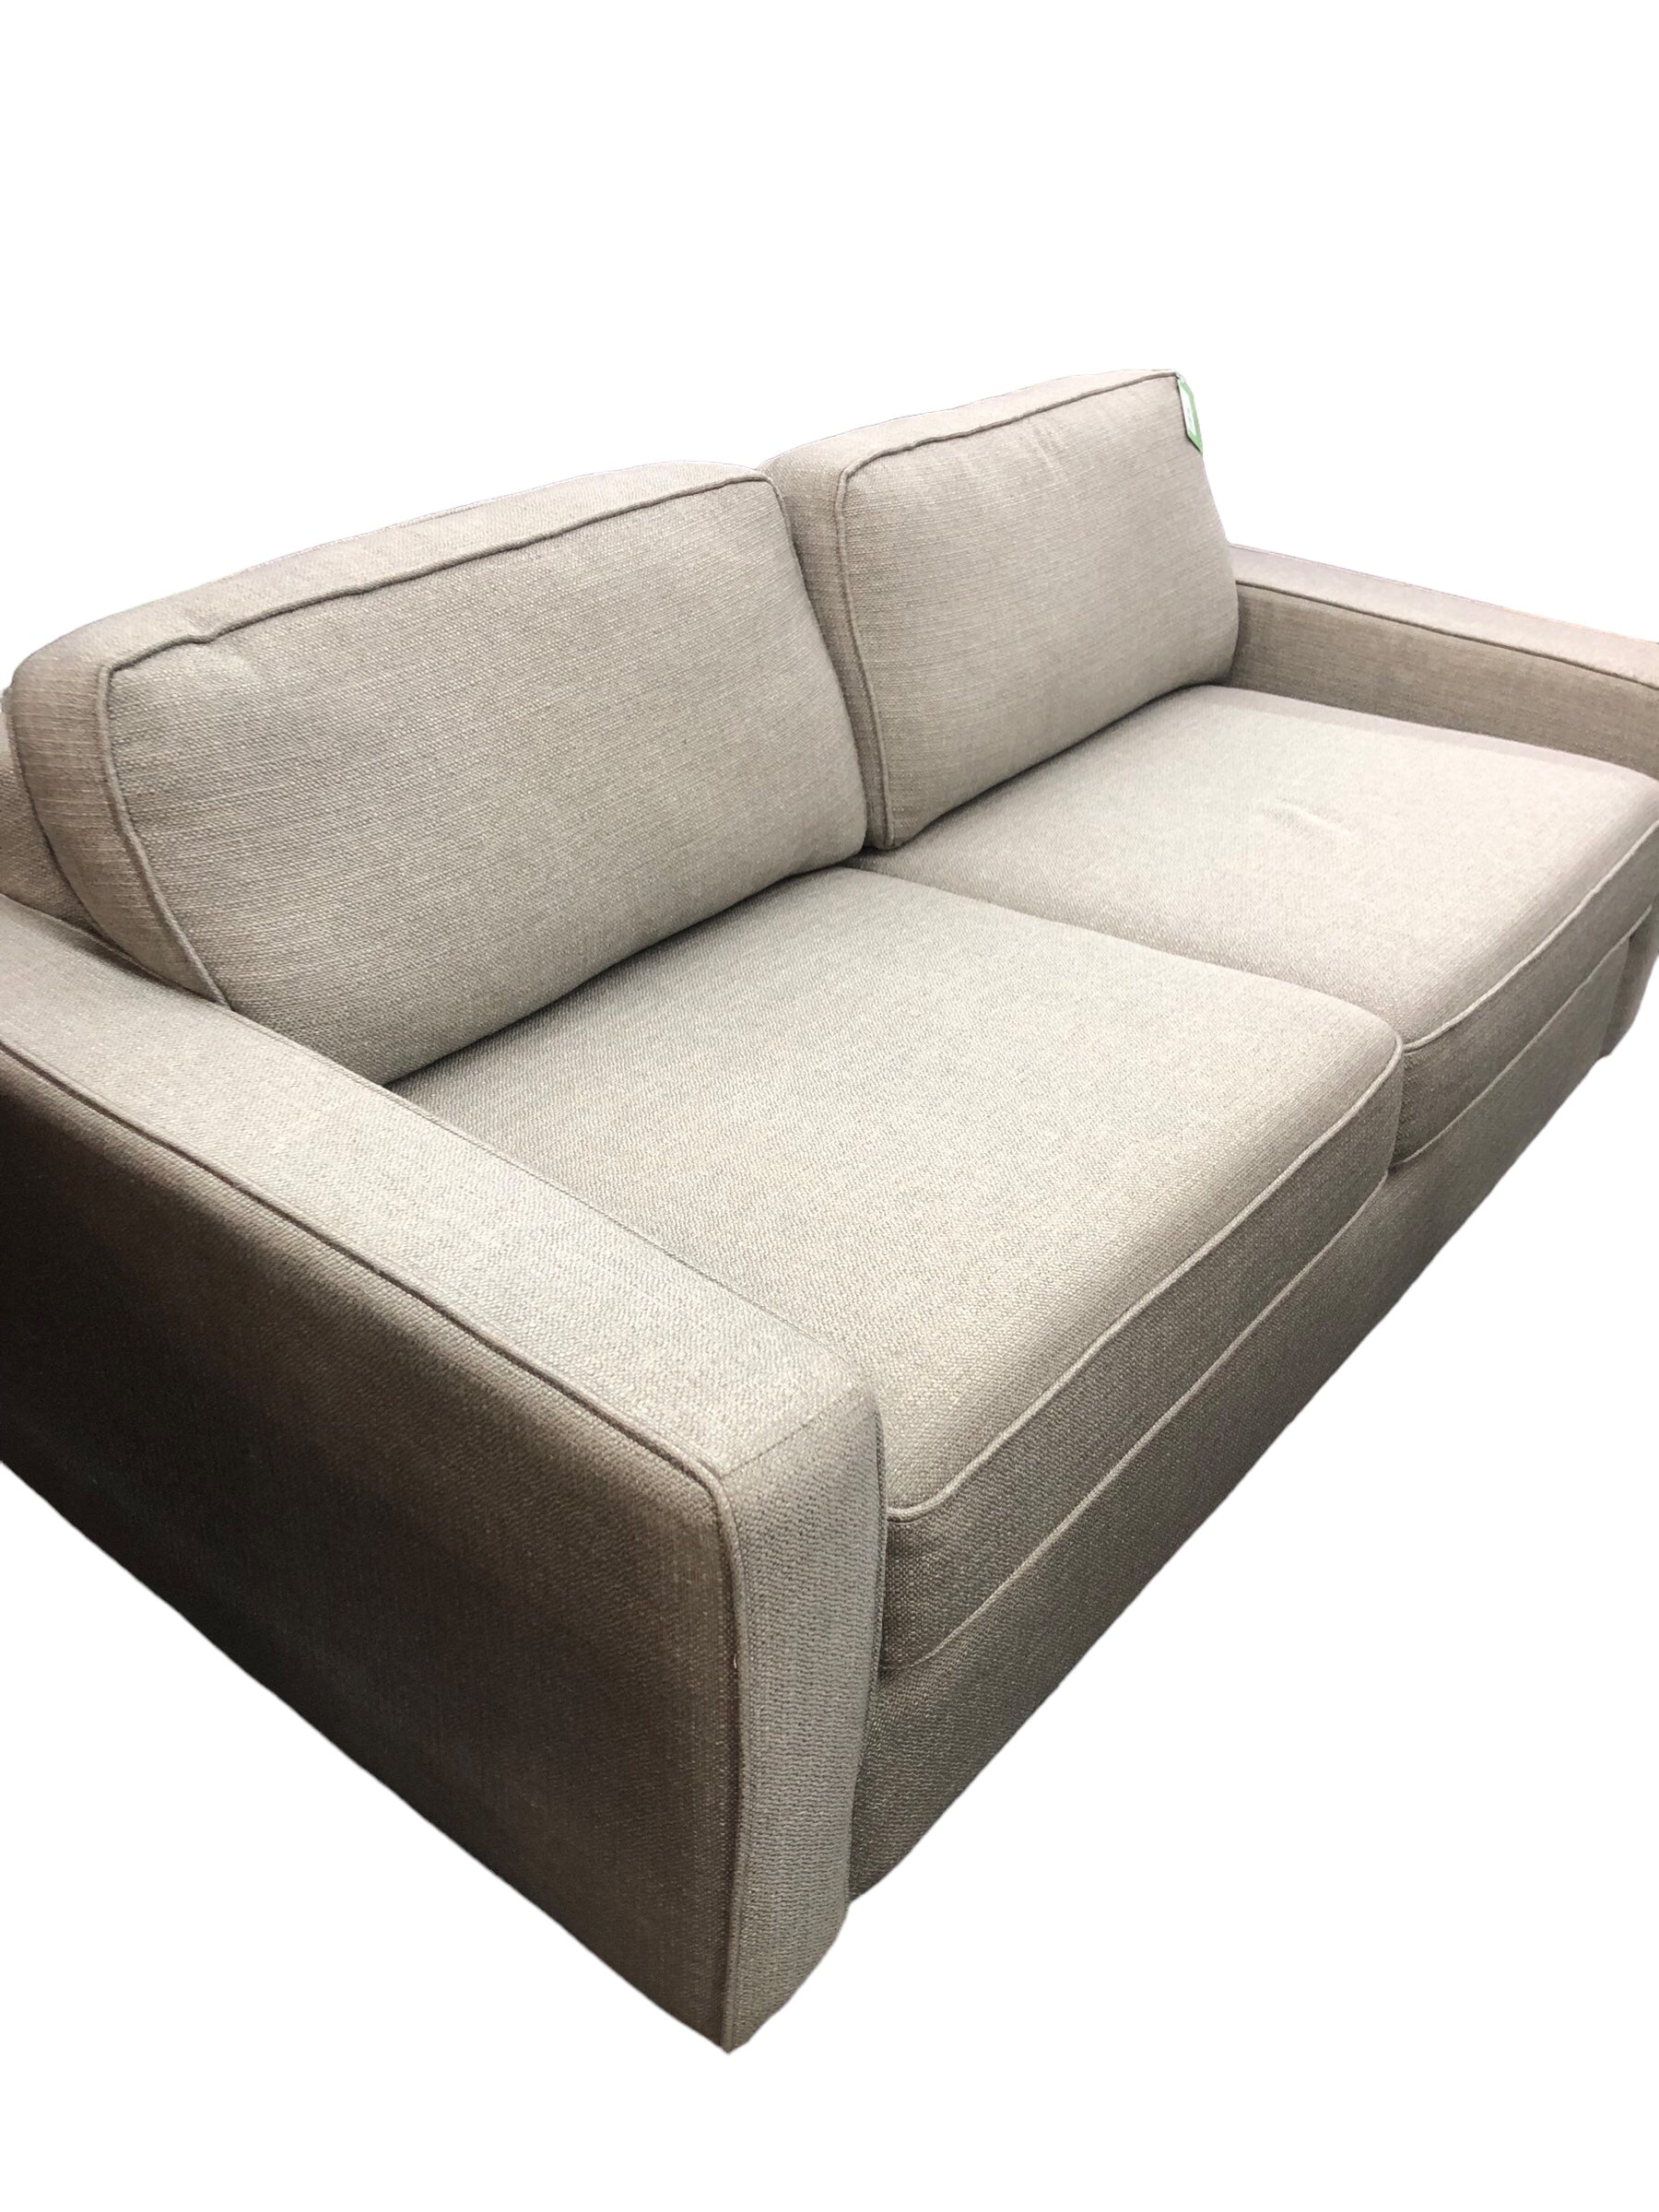 Soft Grey Tweed Sofa